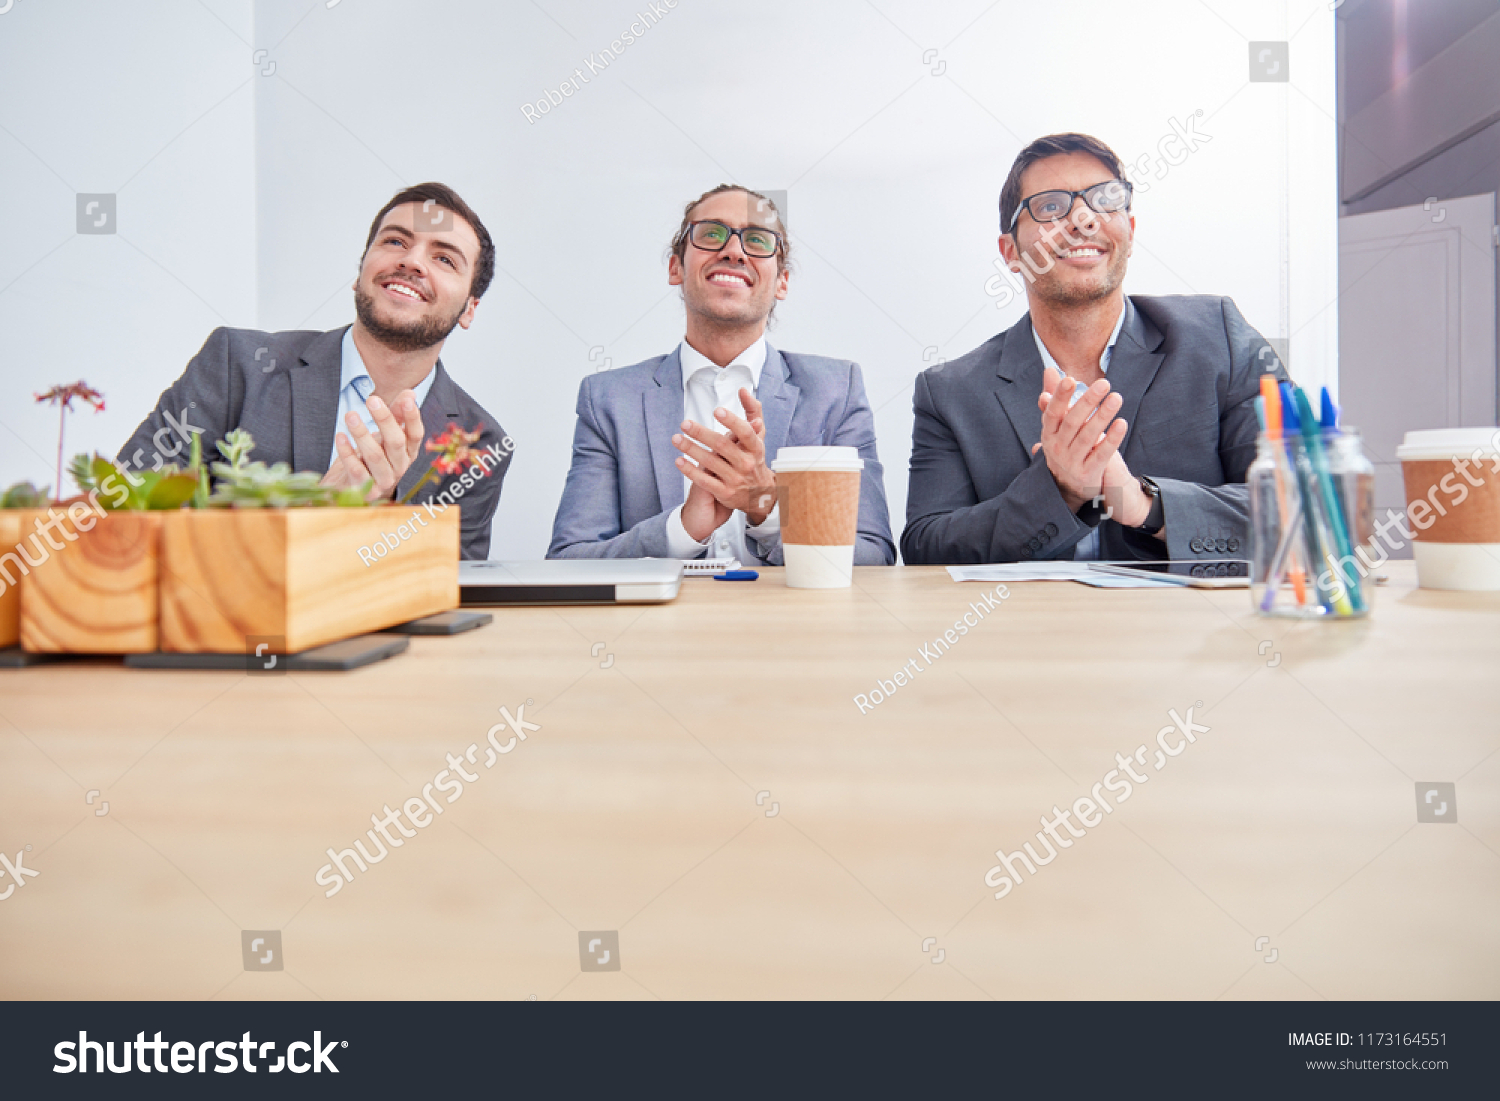 Three business men applaud in a seminar or seminar #1173164551